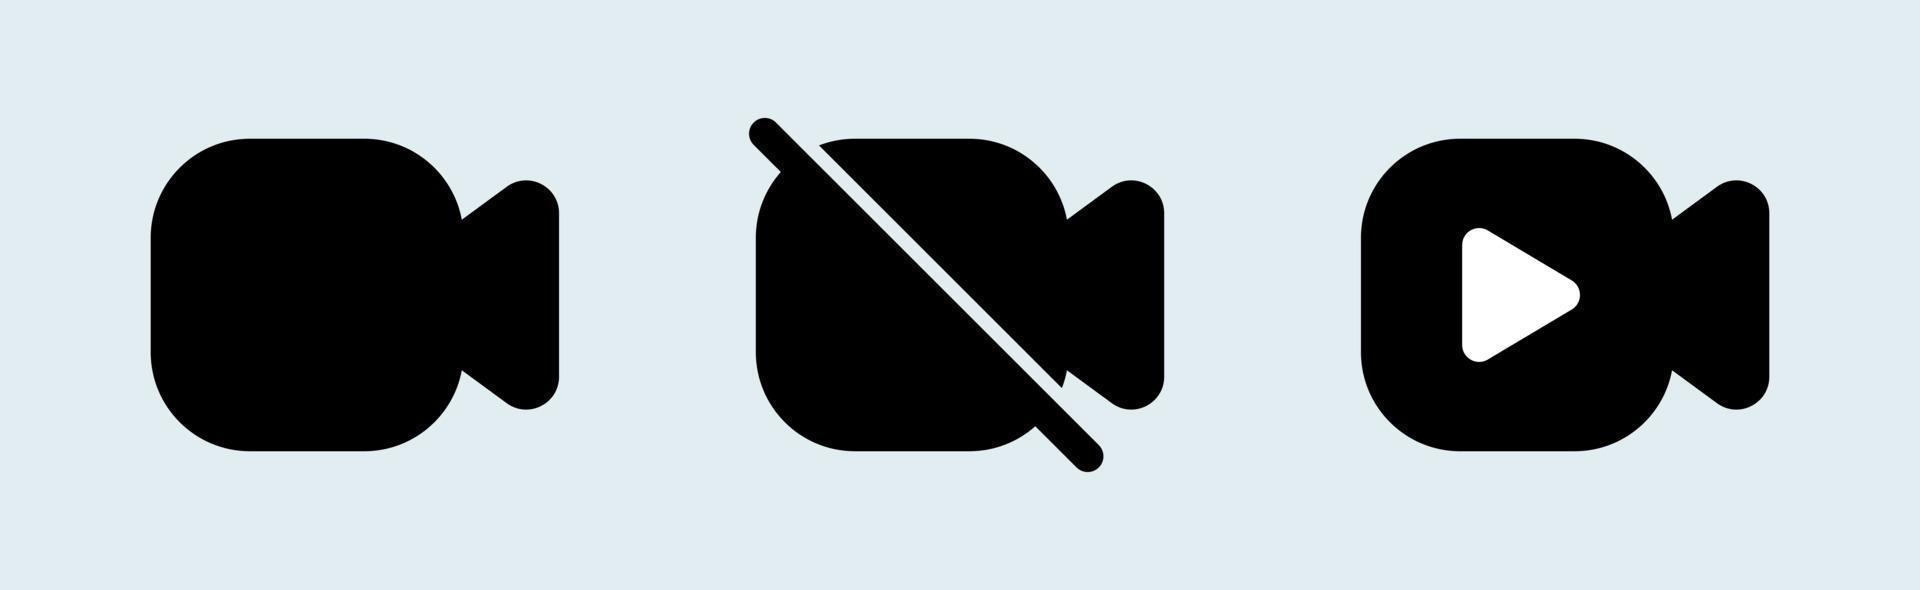 video camera vector icon set in zwarte kleuren. film symbool illustratie.